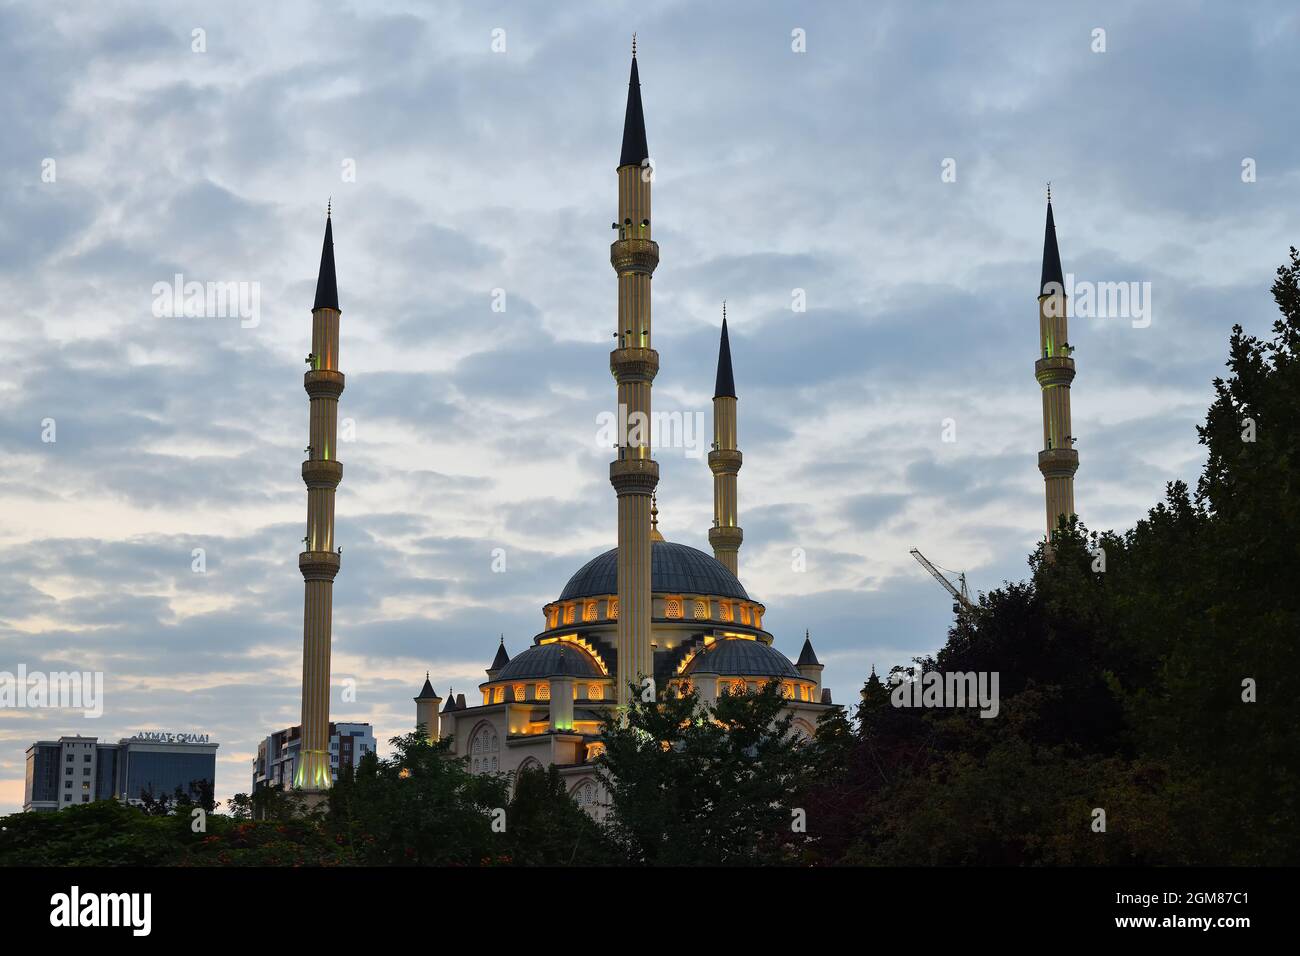 Grozny, Chechnya, Russia - September 13, 2021: Ahmad Kadyrov Mosque Heart of Chechnya shown at night Stock Photo